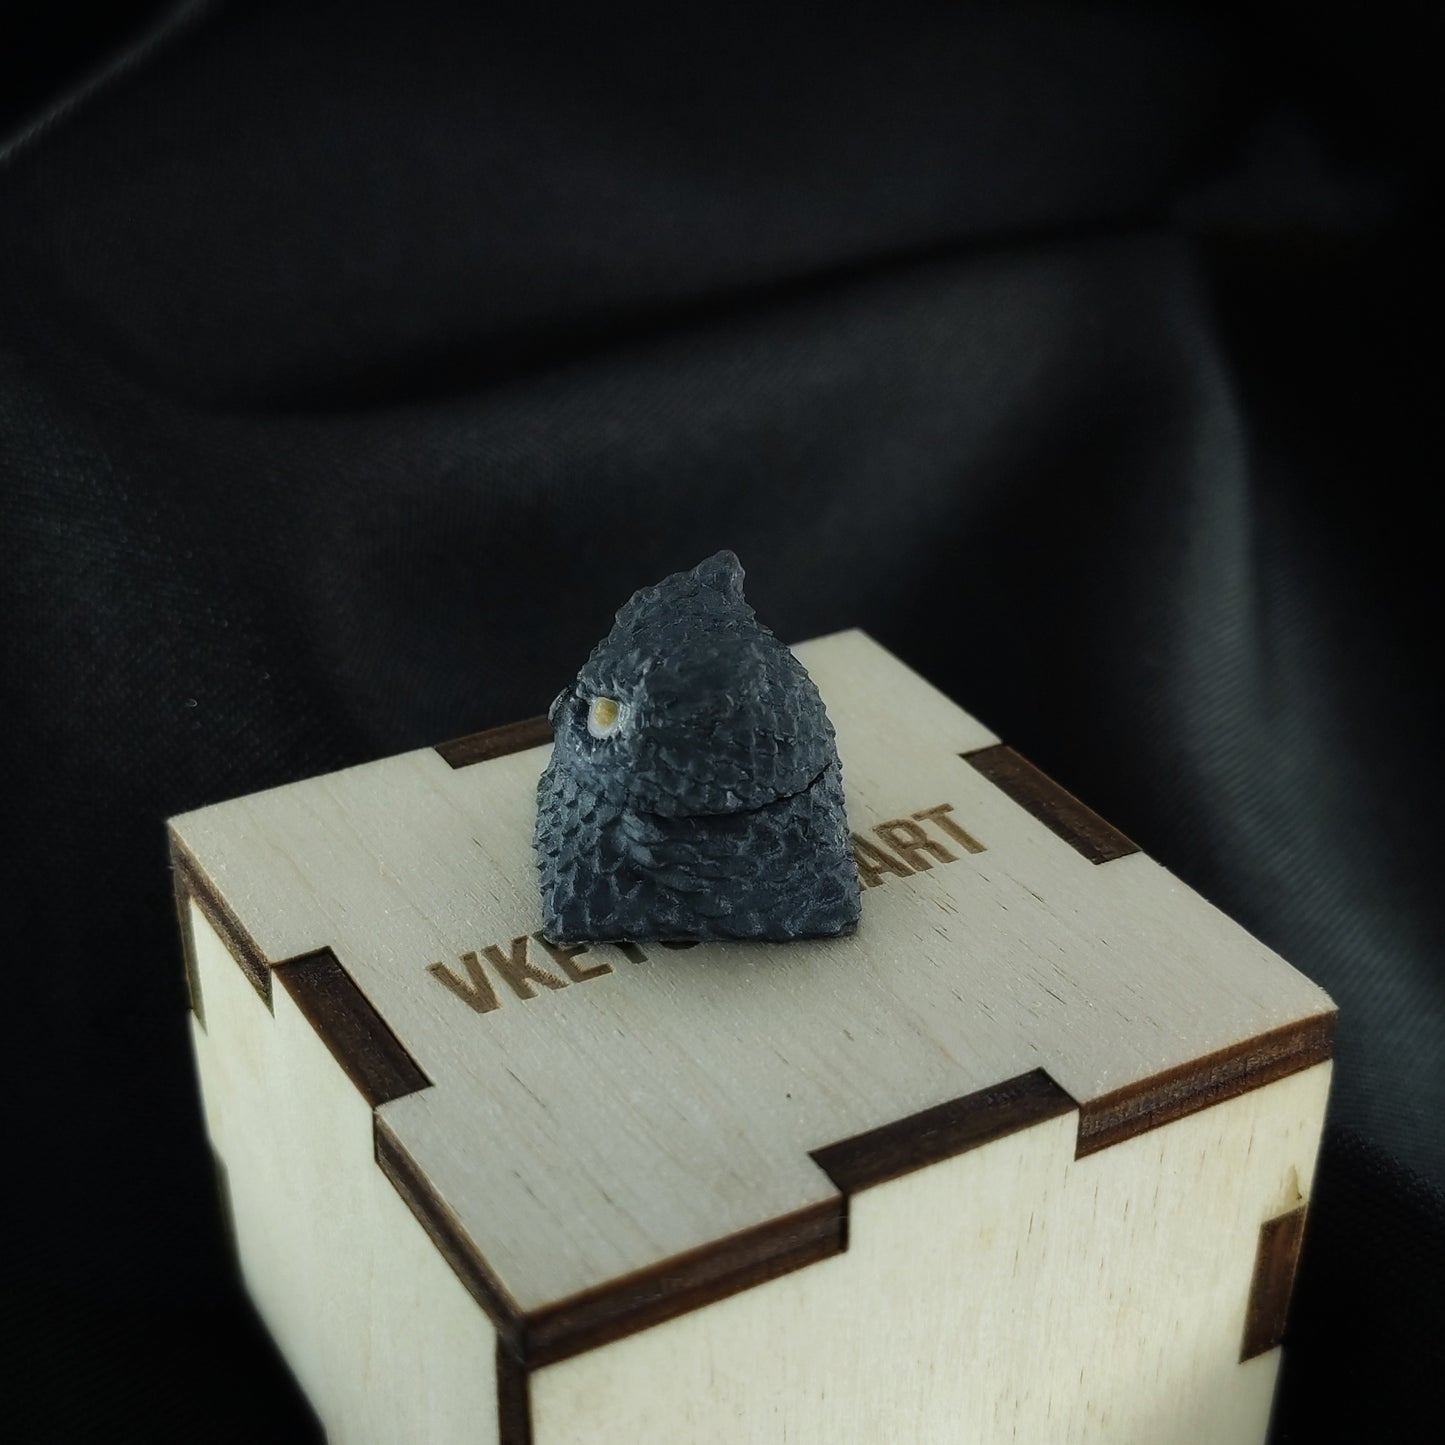 Owl artisan keycap #61